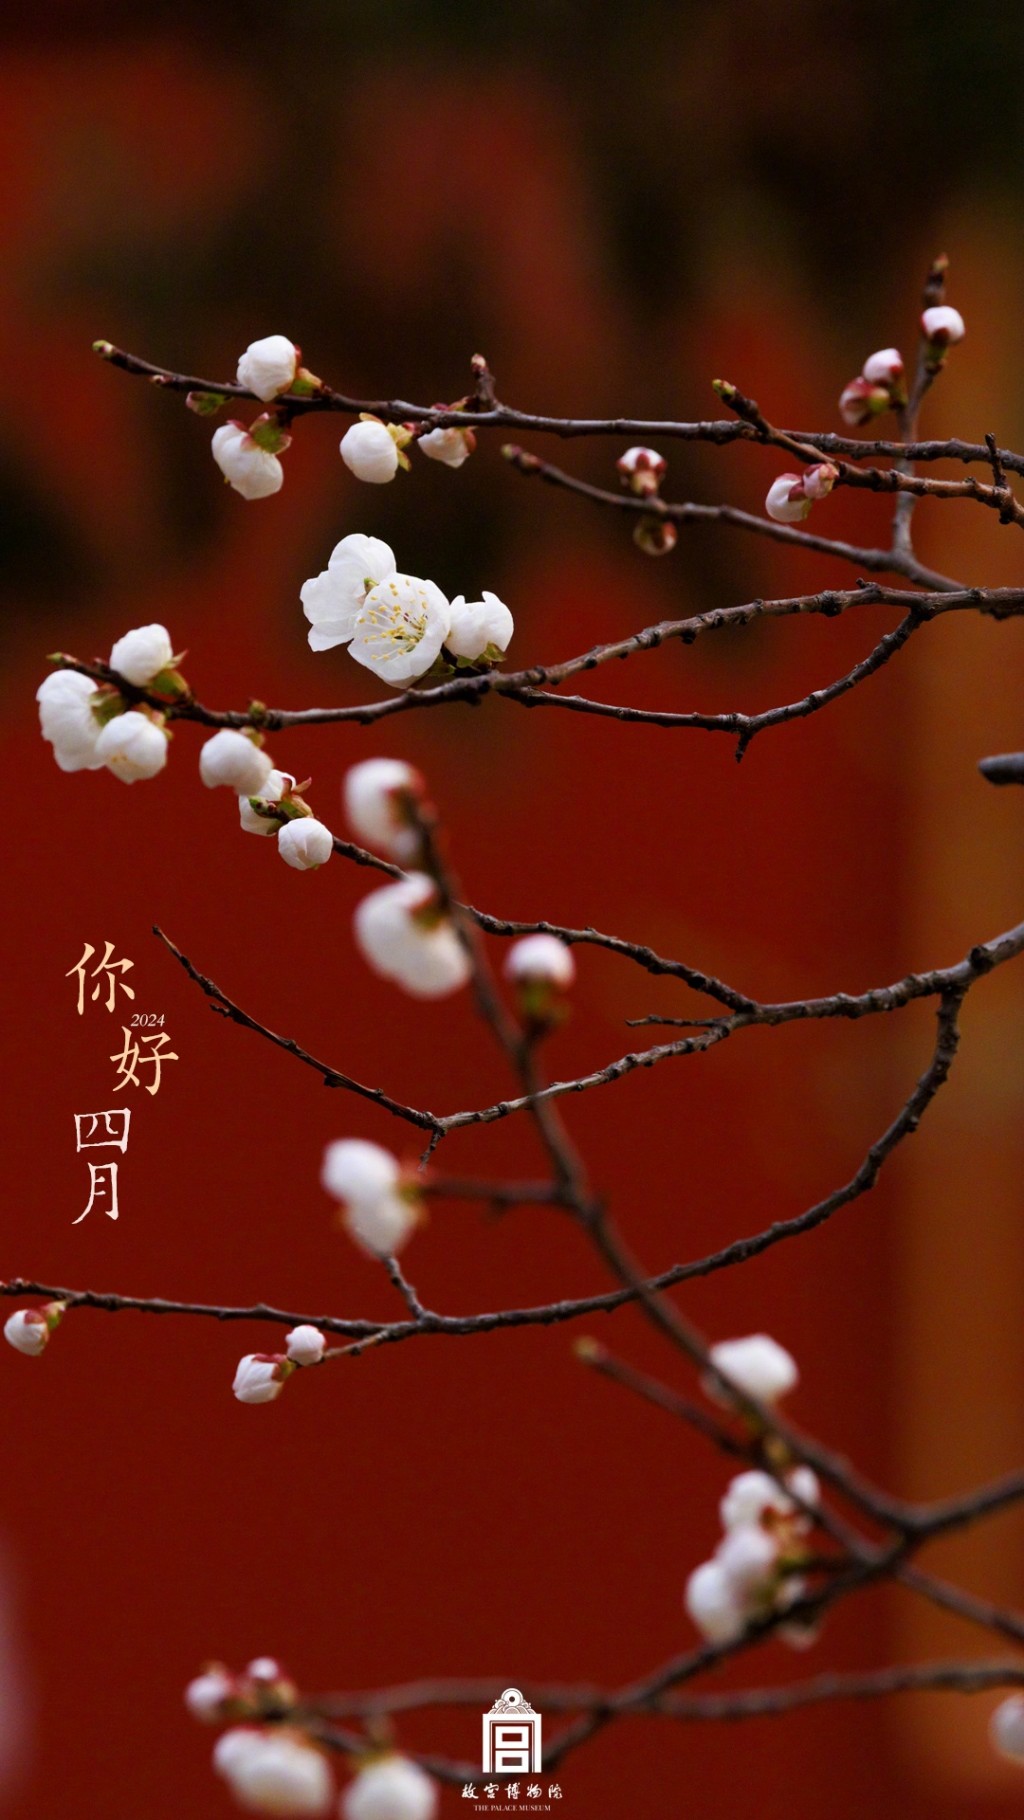 你好四月故宫博物院芳菲时节鲜花风景手机壁纸